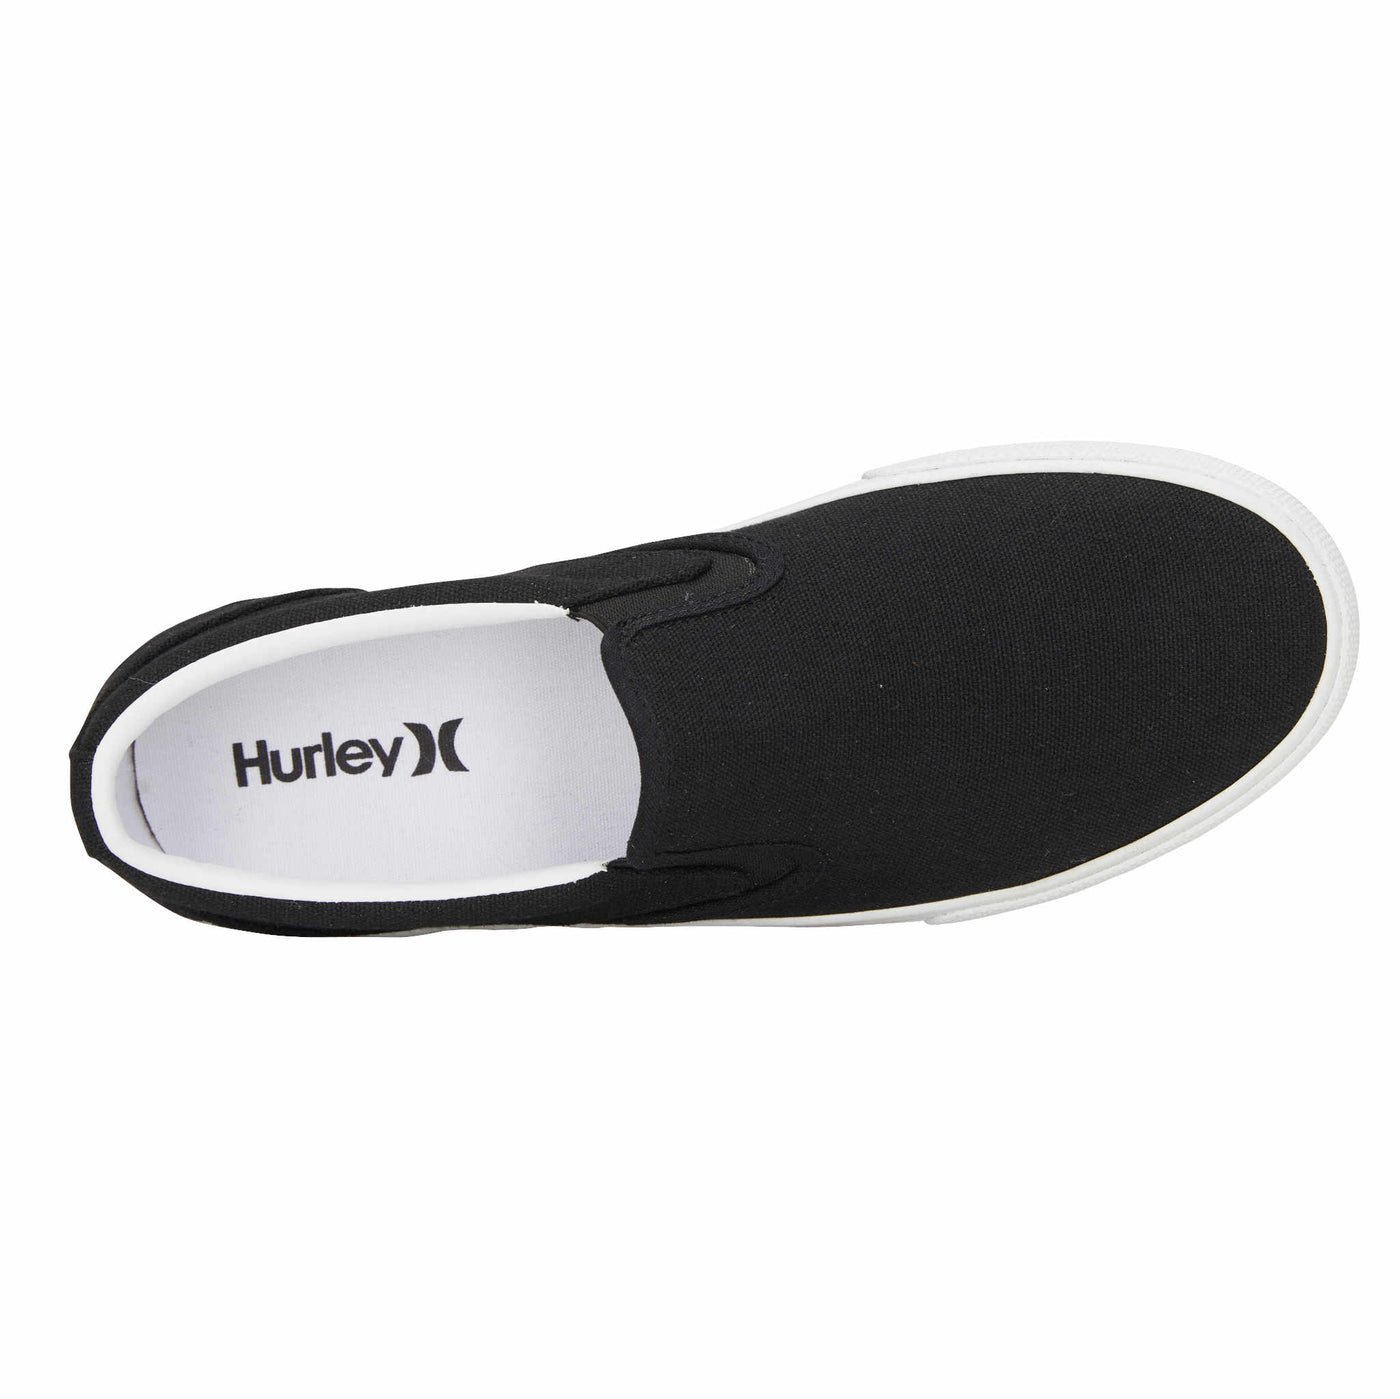 Hurley Men's Kayo Slip On Sneakers Black